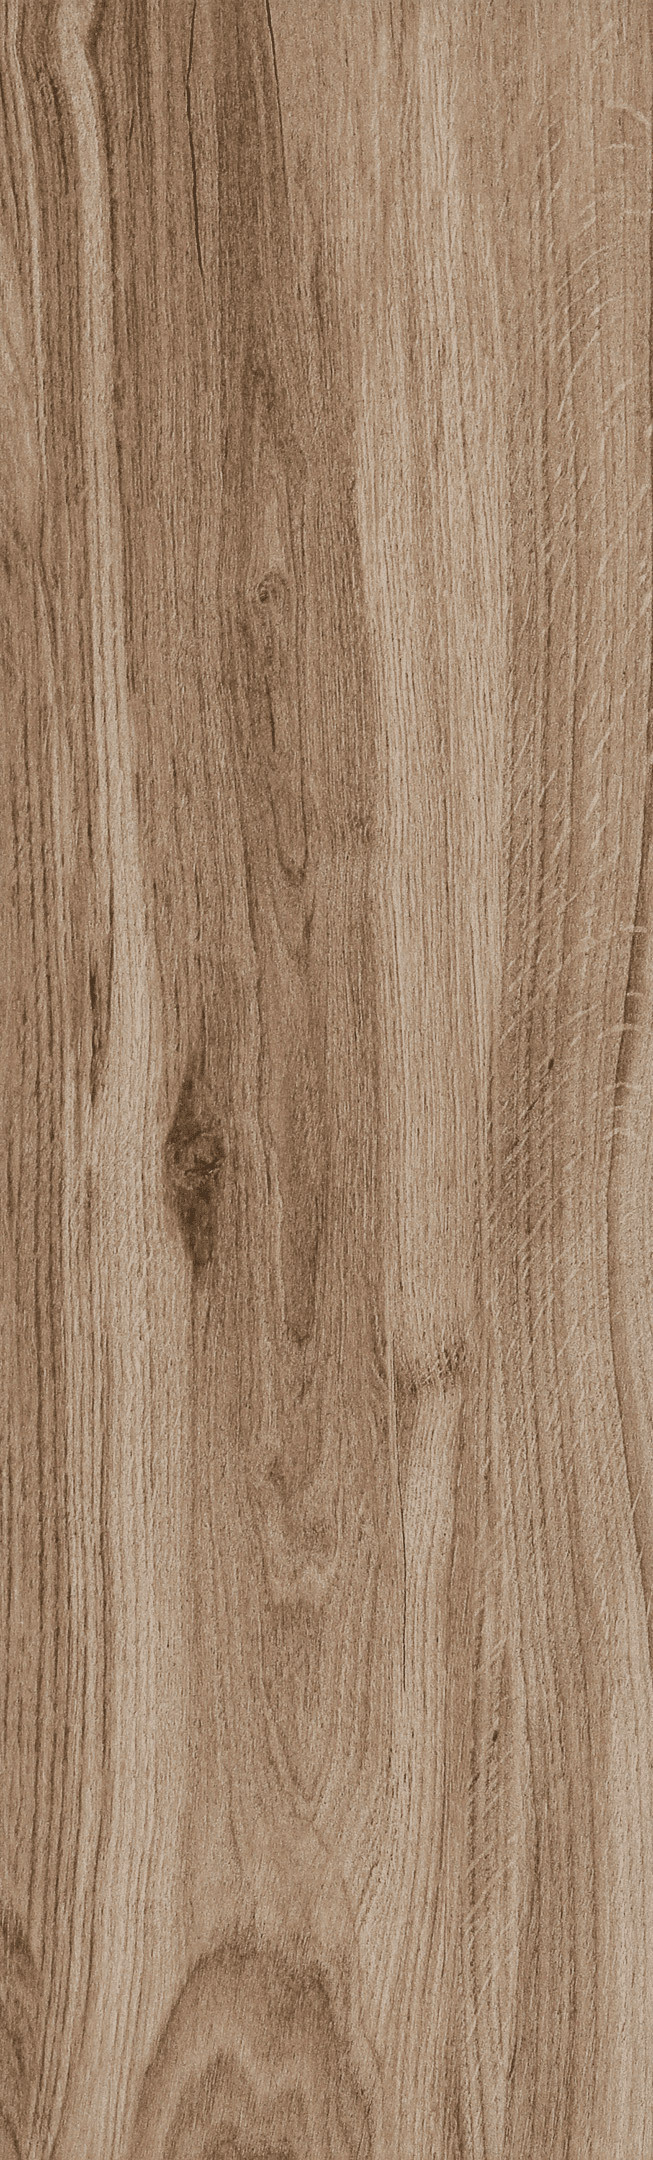 Керамогранит Cersanit Maplewood коричневый матовый 598х185х7,5 мм (11 шт.=1,216 кв.м)